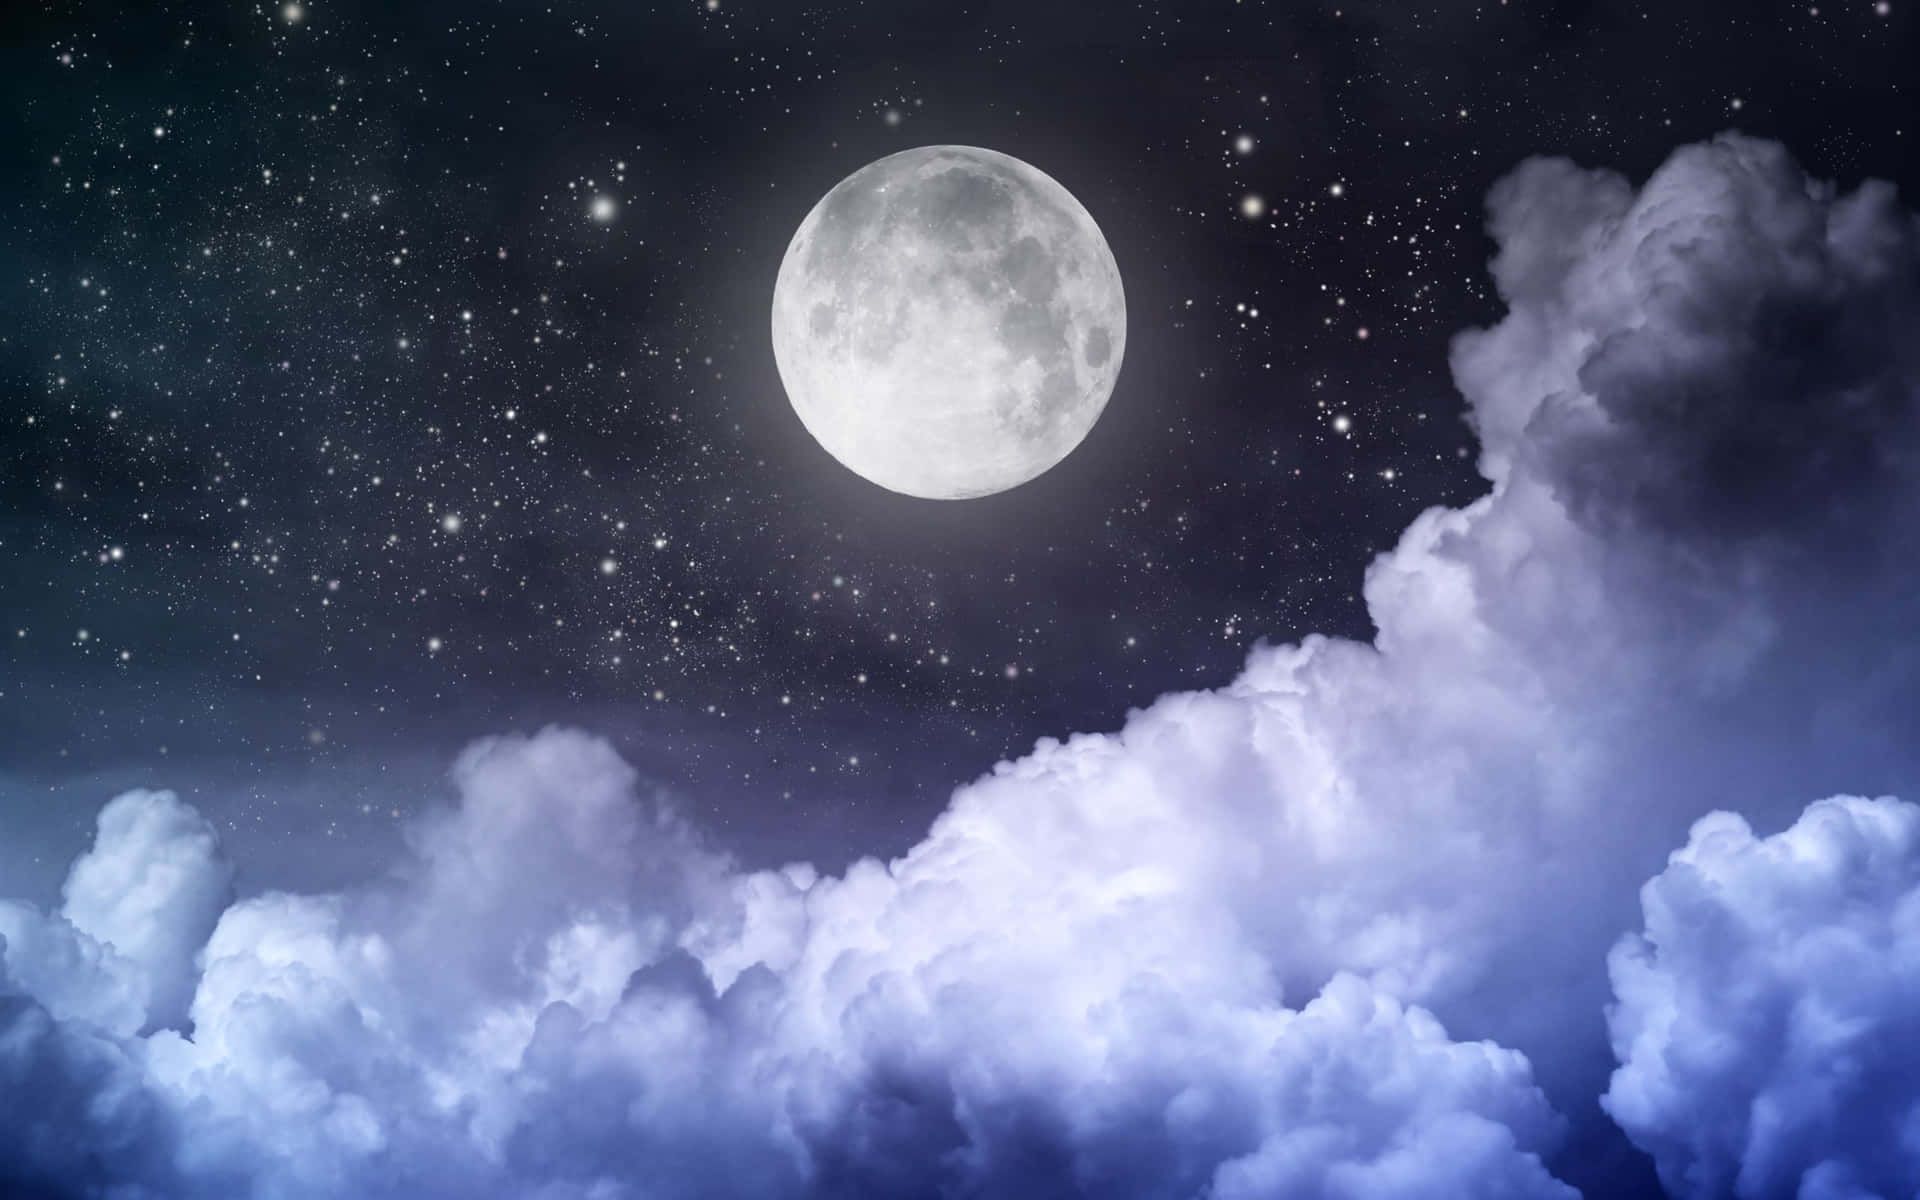 Mặt trăng đáng yêu: Bạn yêu thích cảm giác lãng mạn của mặt trăng? Hình ảnh mặt trăng đáng yêu này sẽ khiến bạn say đắm với sự dịu dàng của nó. Hãy khám phá thêm các khoảnh khắc tuyệt vời của mặt trăng đáng yêu này.